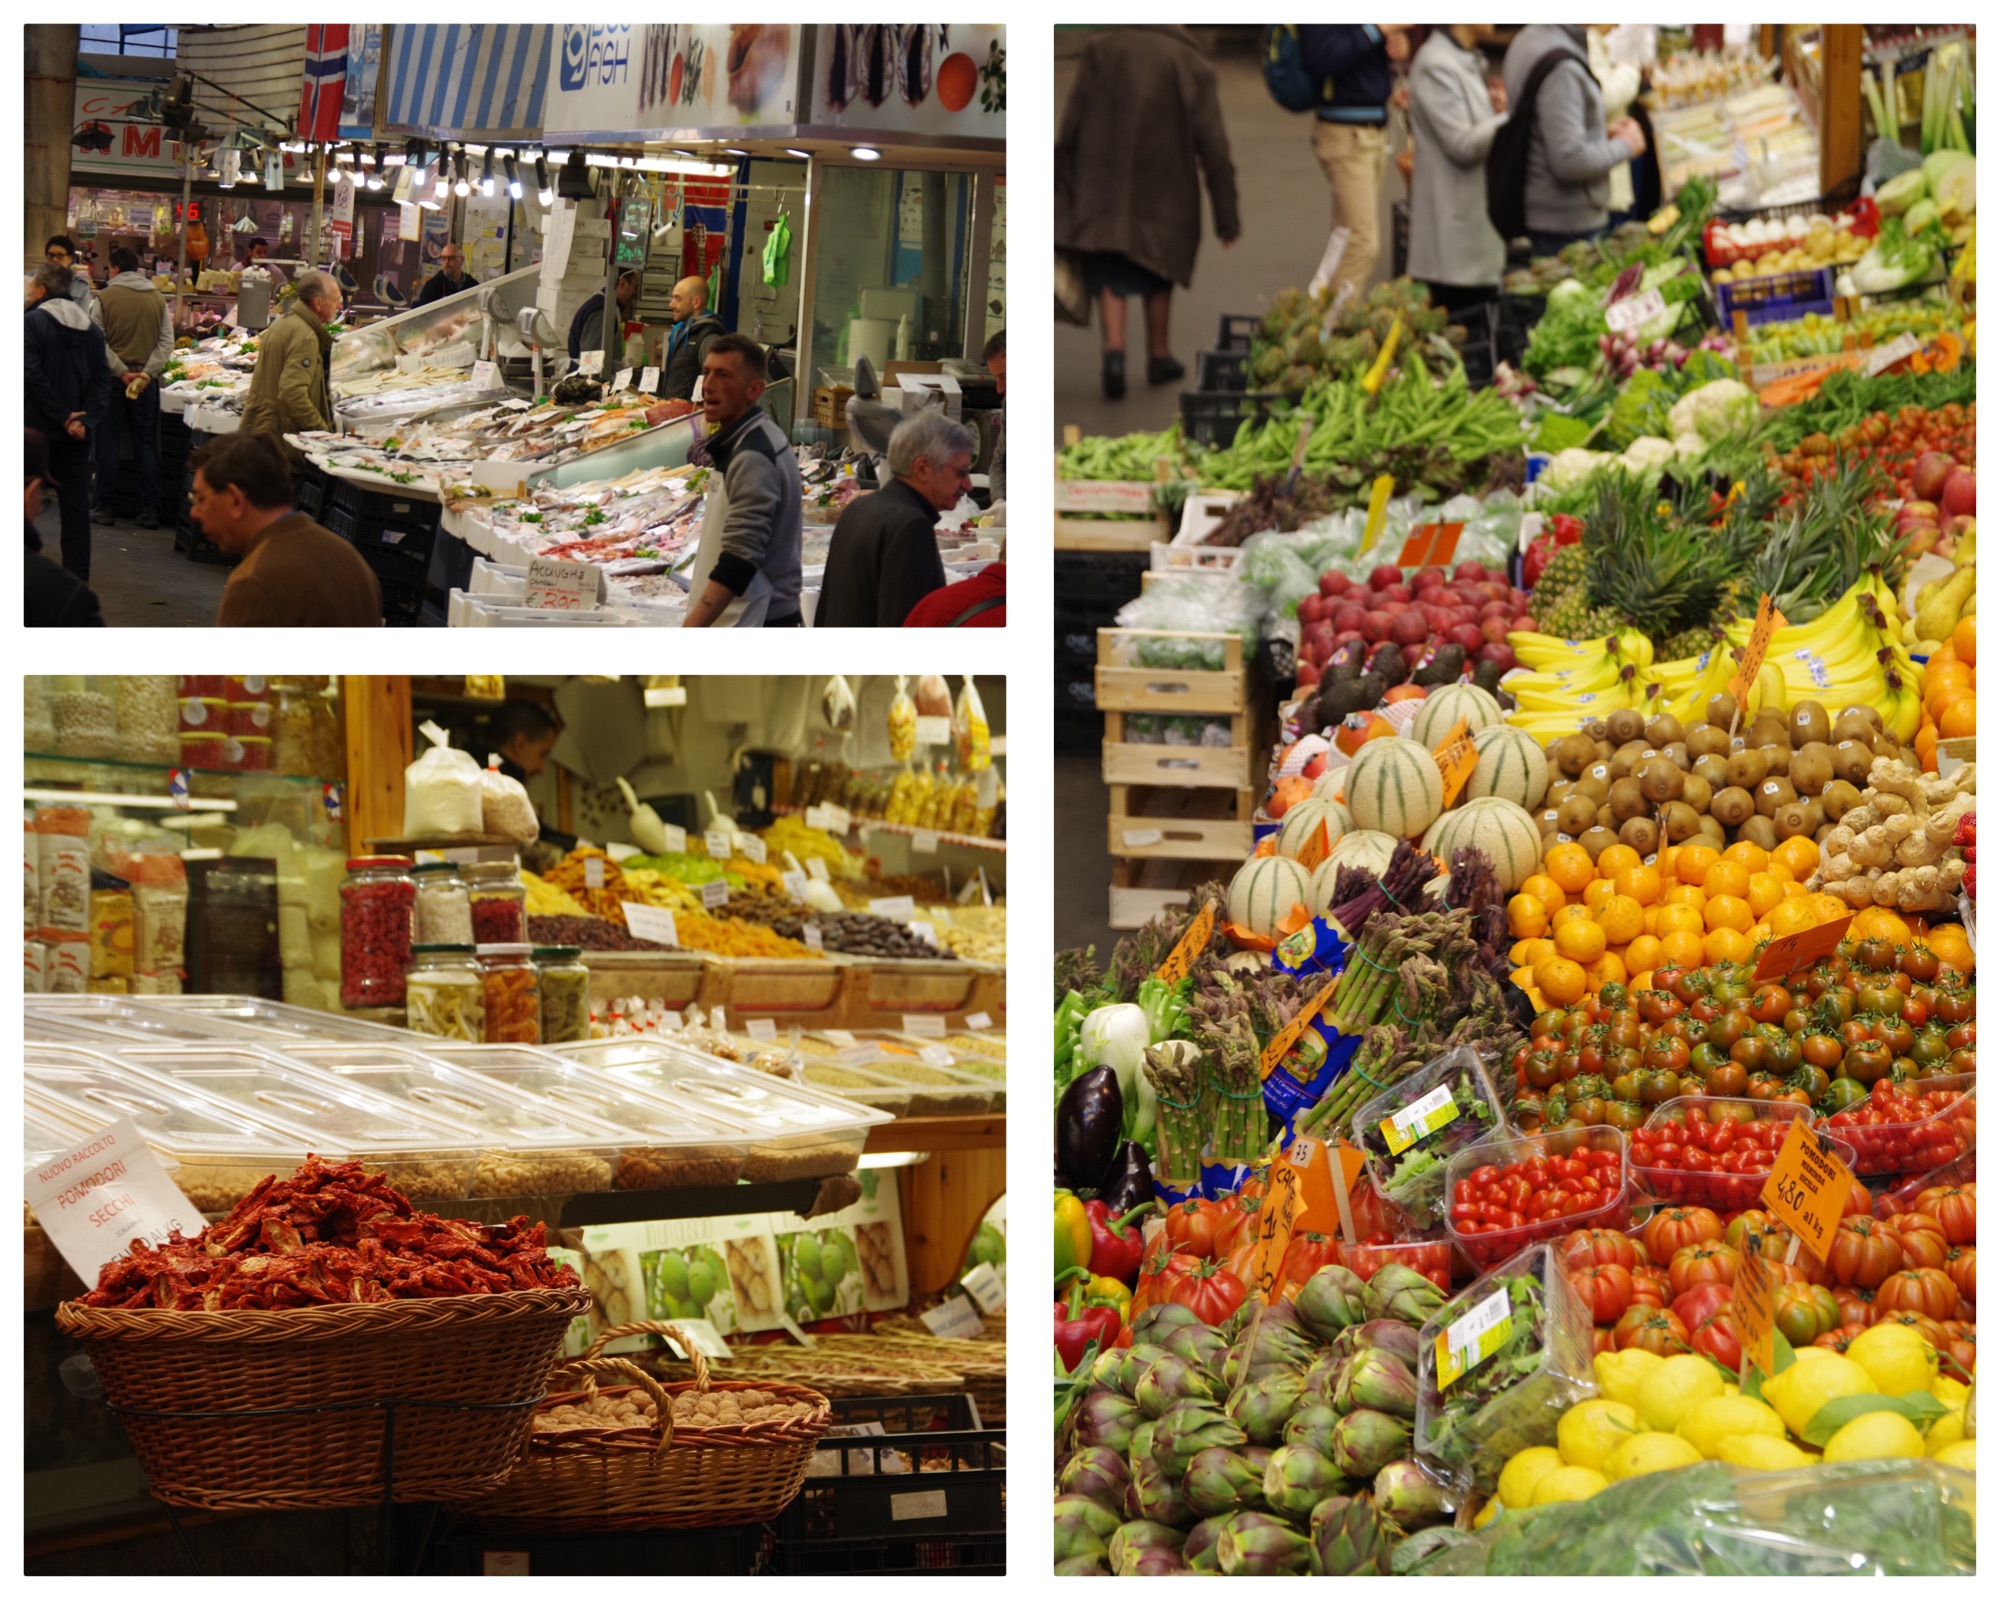 Mercato Orientale di Genova (Genoa East Market)